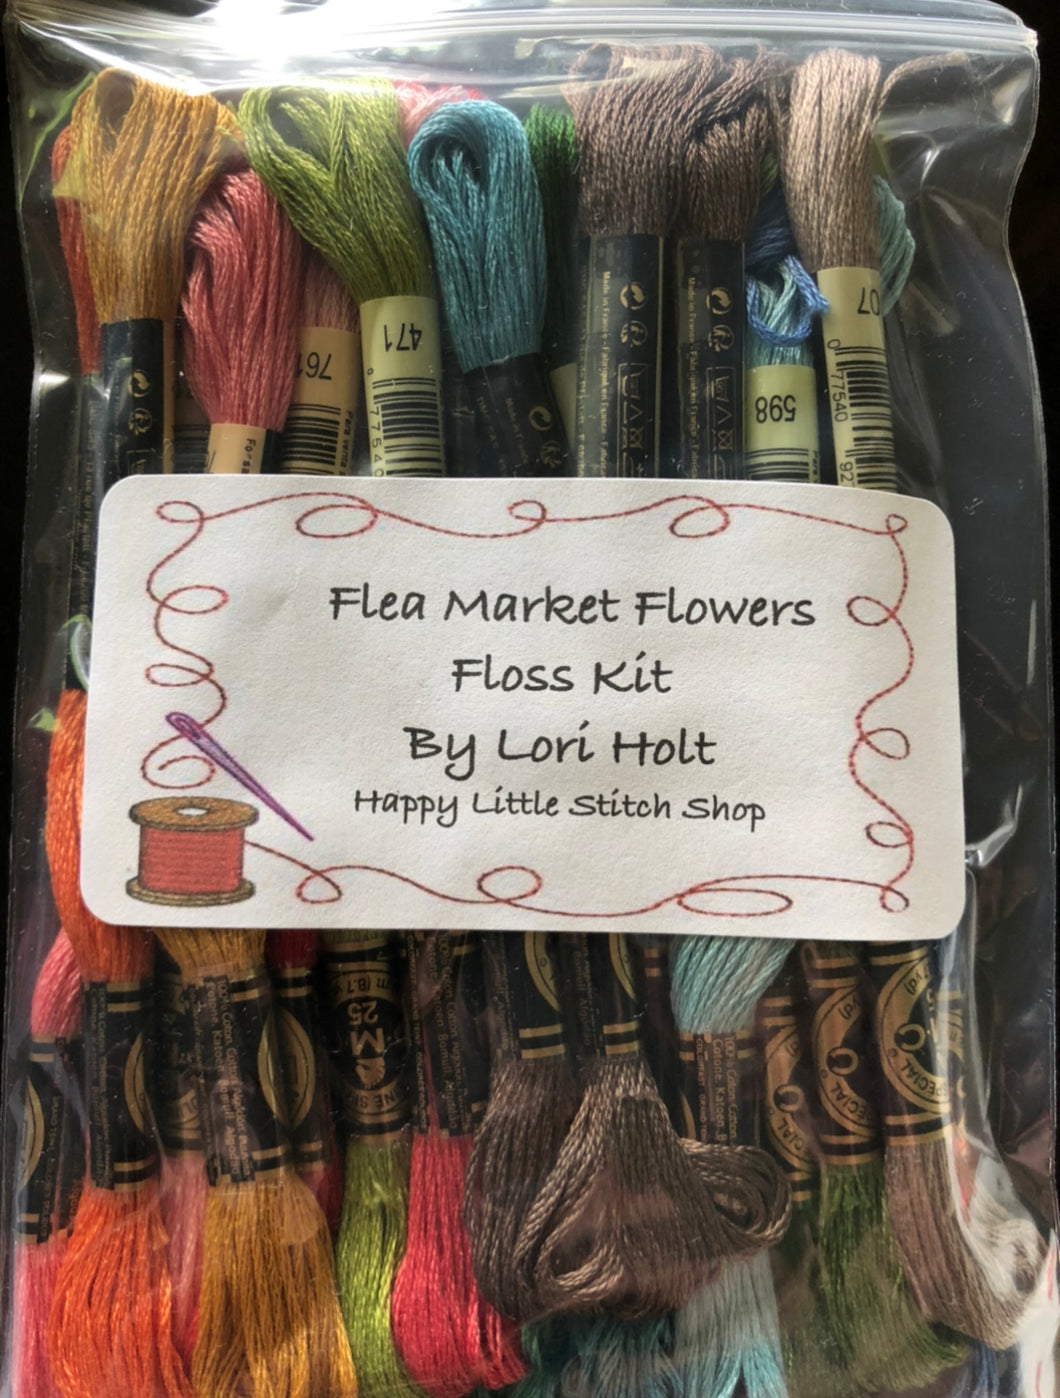 Floss Kit - Flea Market Flowers by Lori Holt